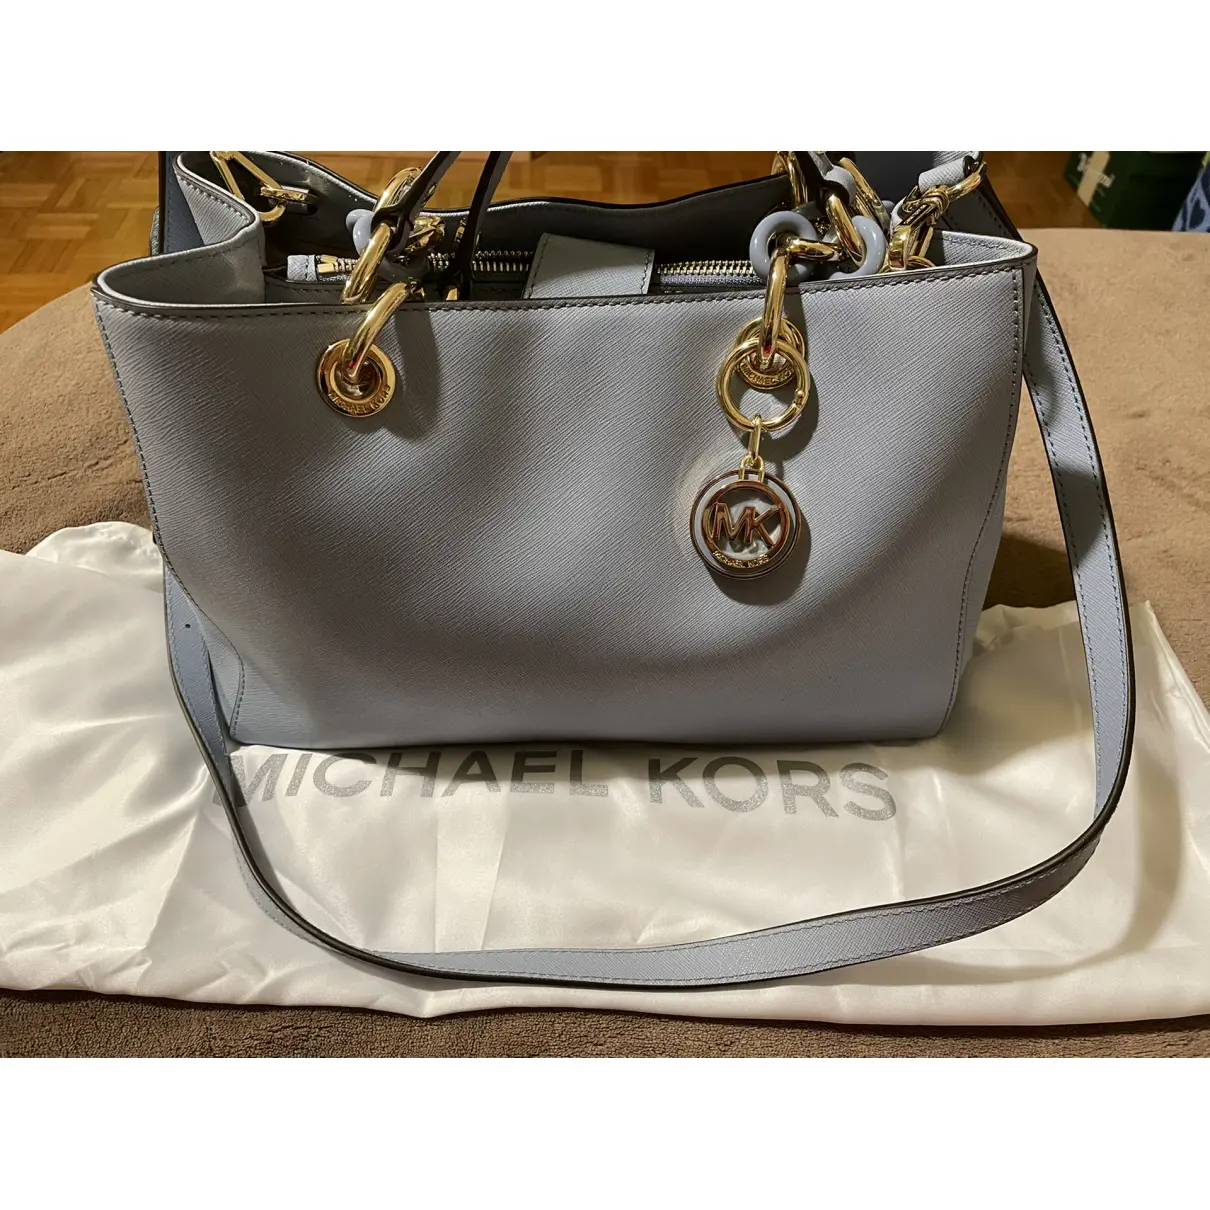 Cynthia leather handbag Michael Kors